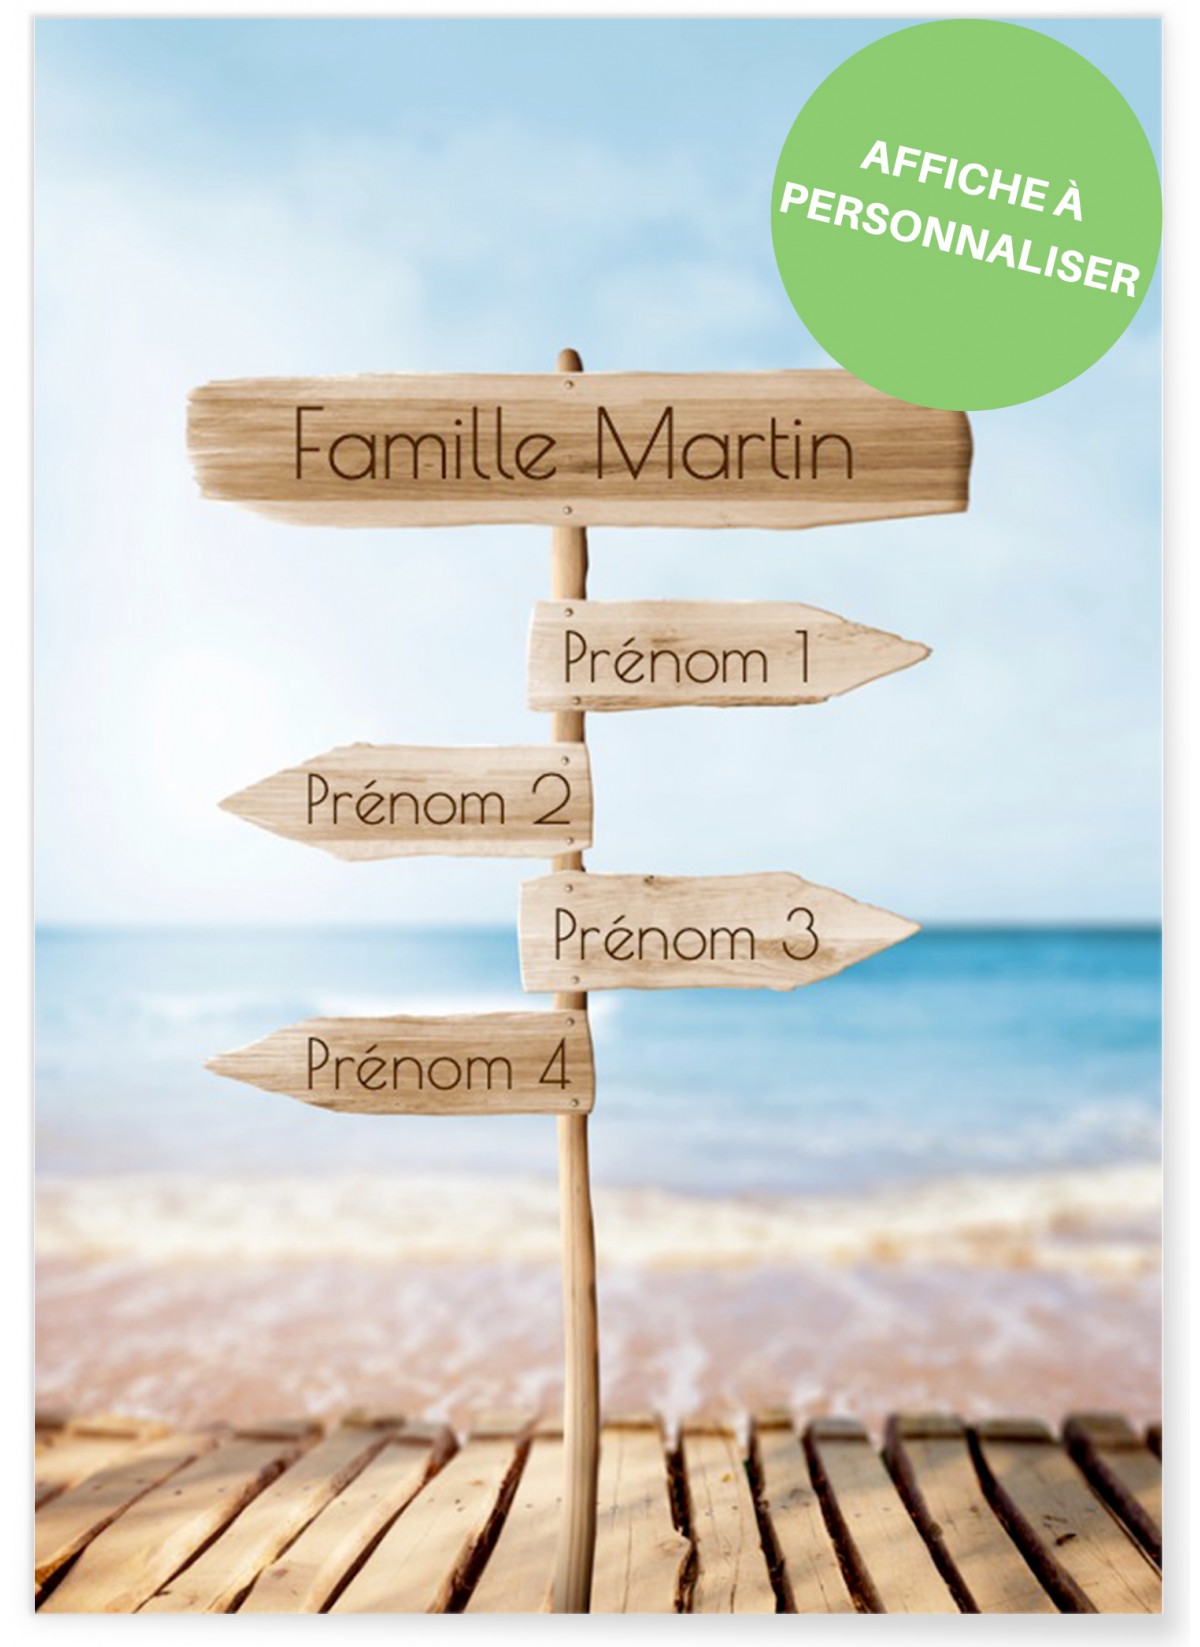 Affiche famille personnalisable avec les prénoms des membres de